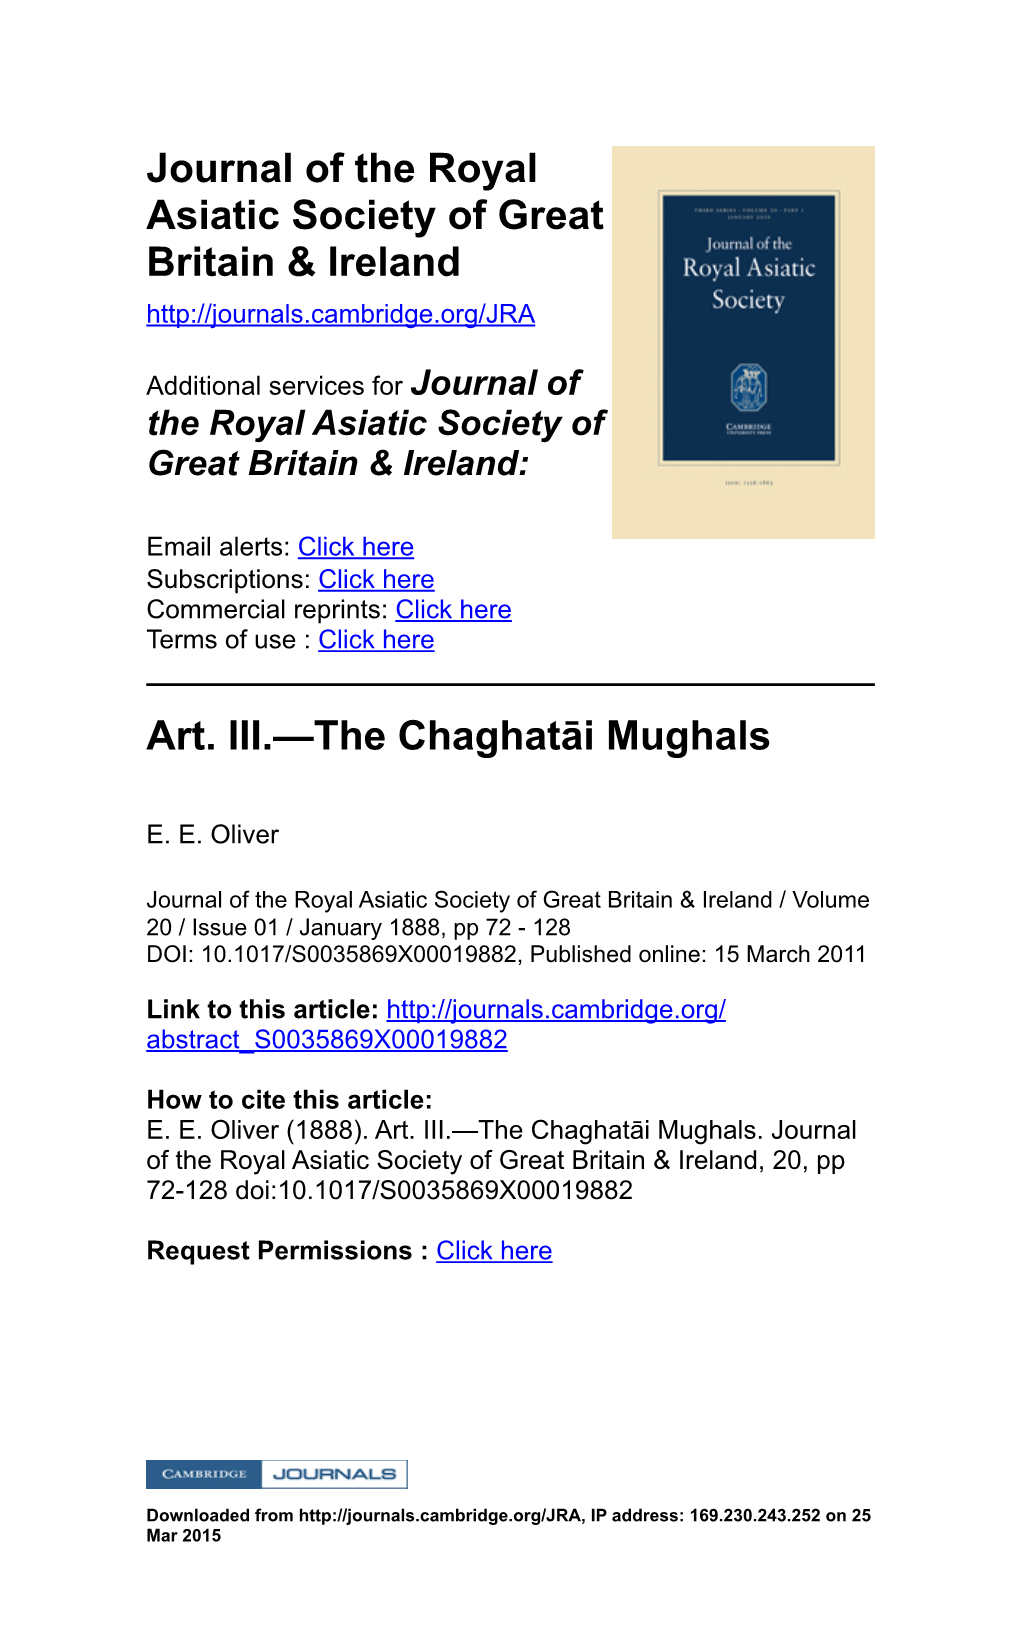 The Chaghatāi Mughals